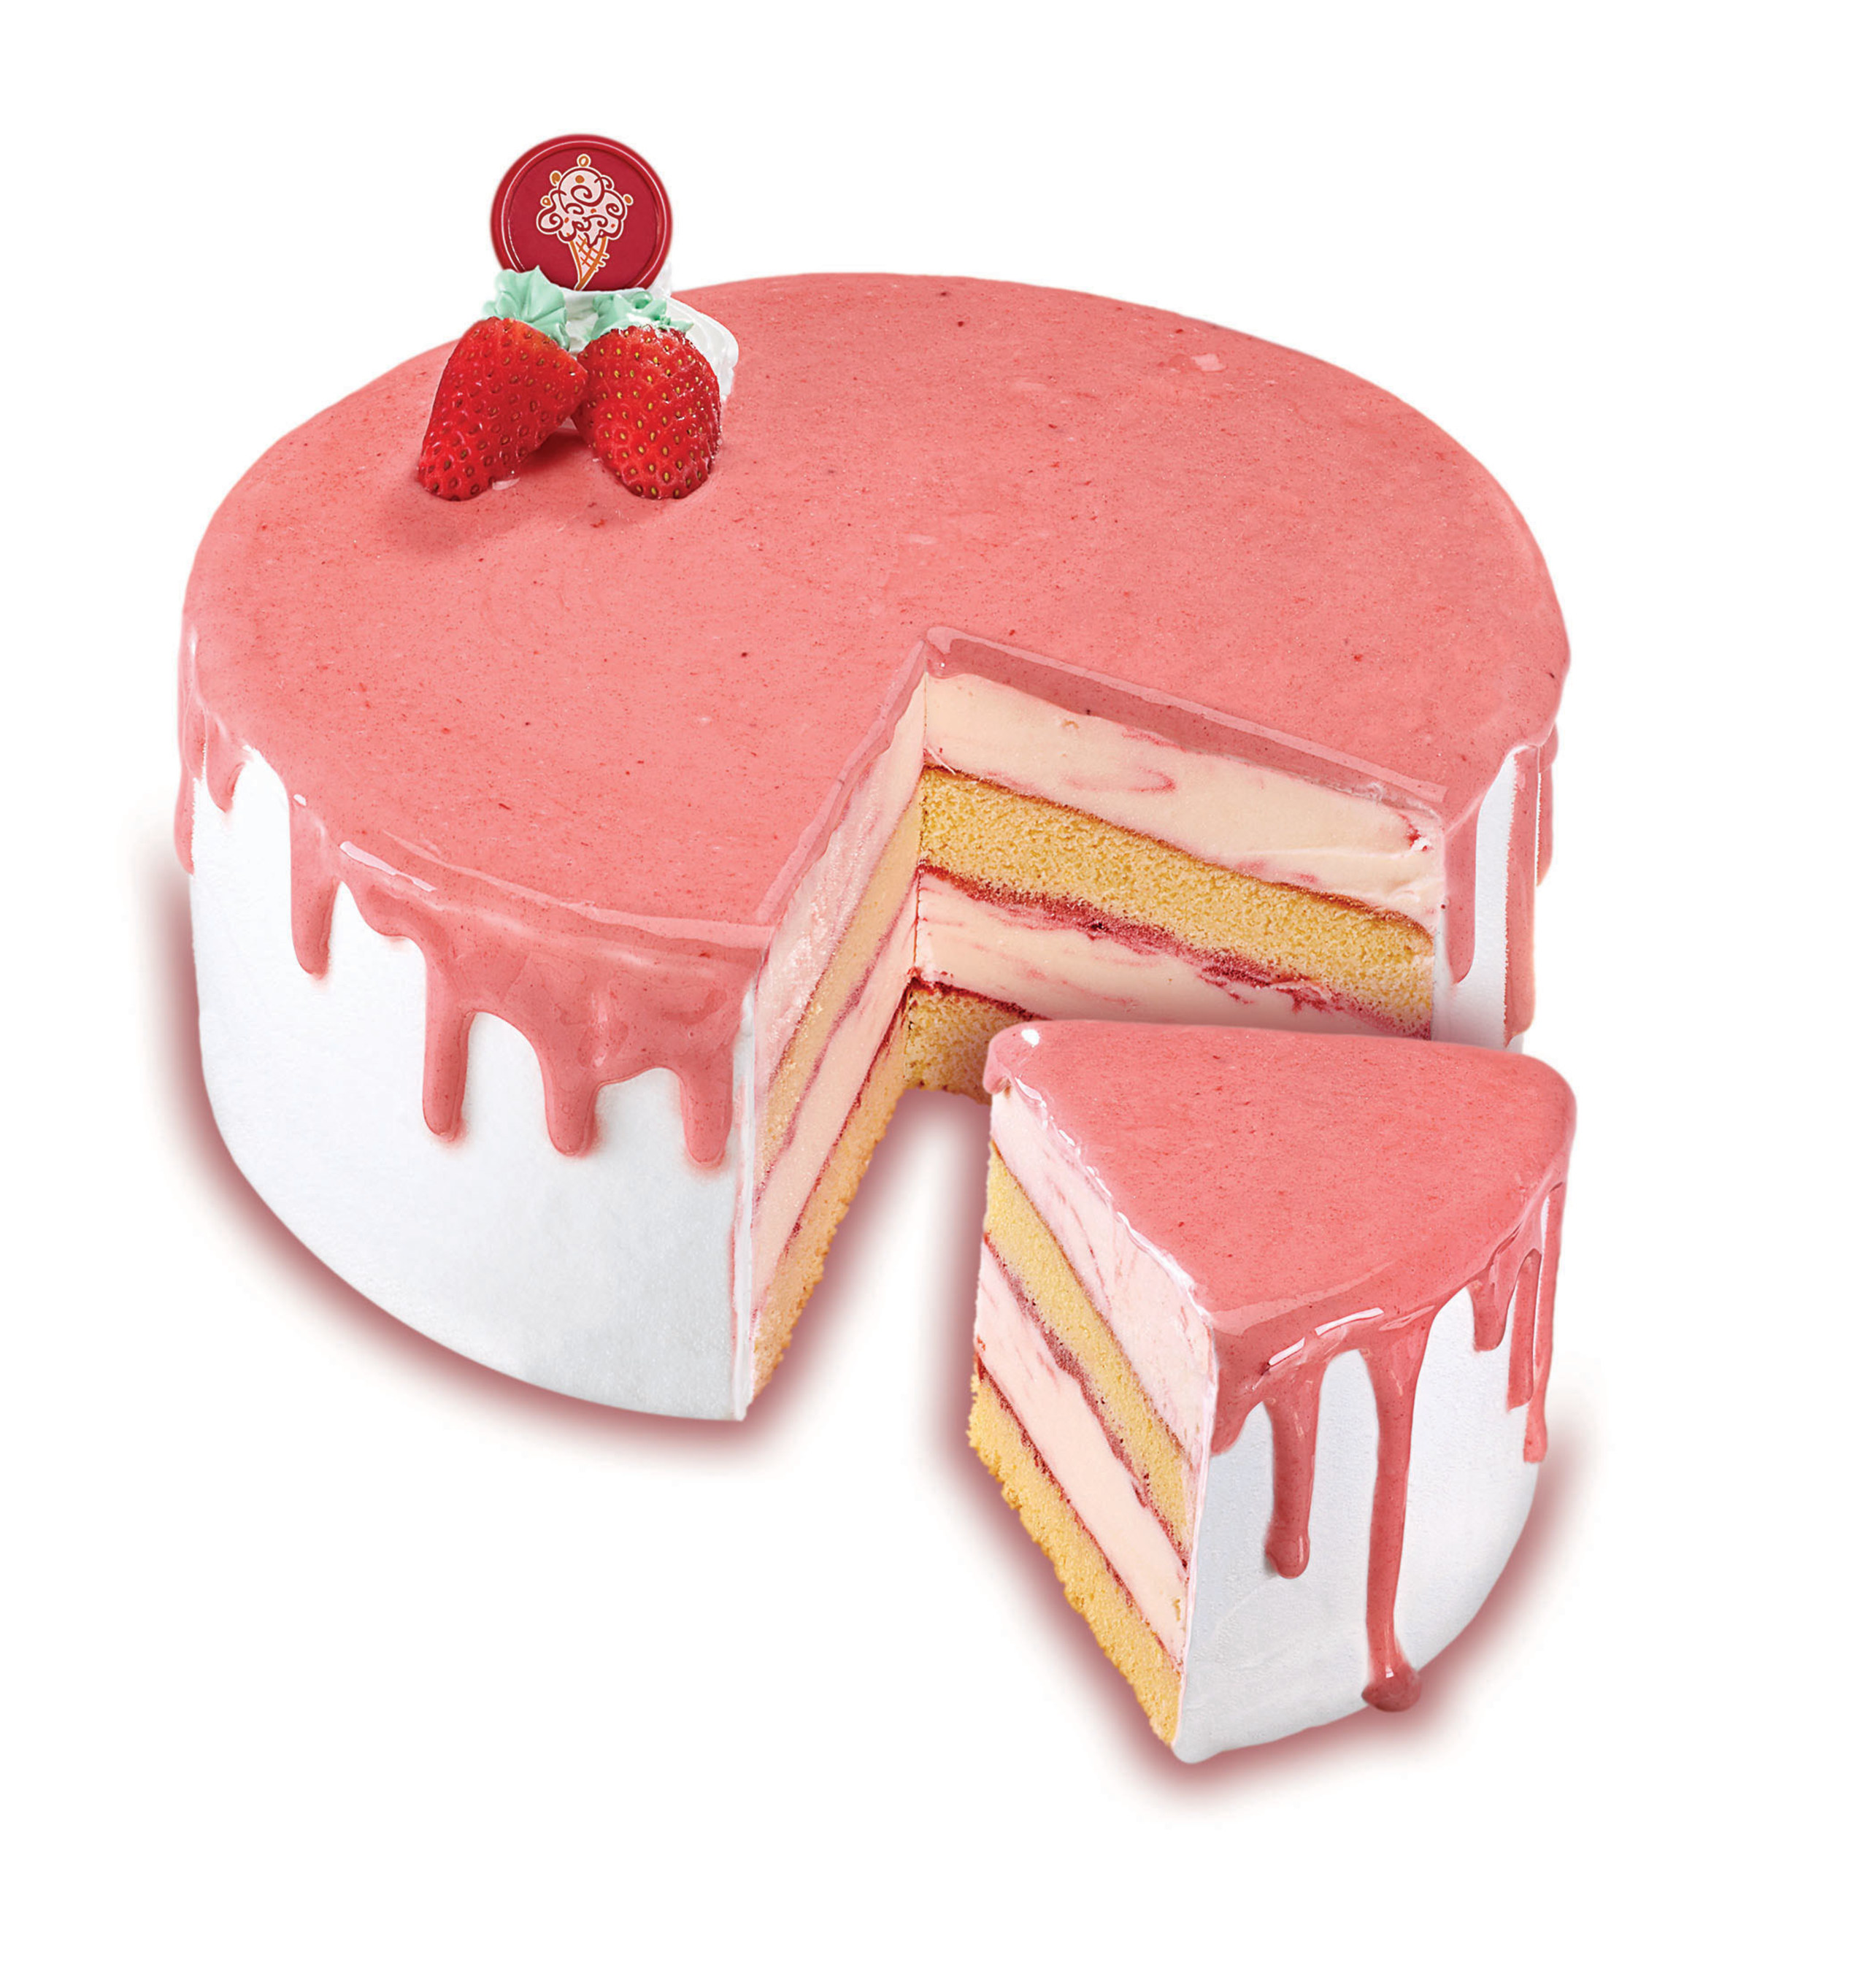 Mother's Day Strawberry Splendor Cake